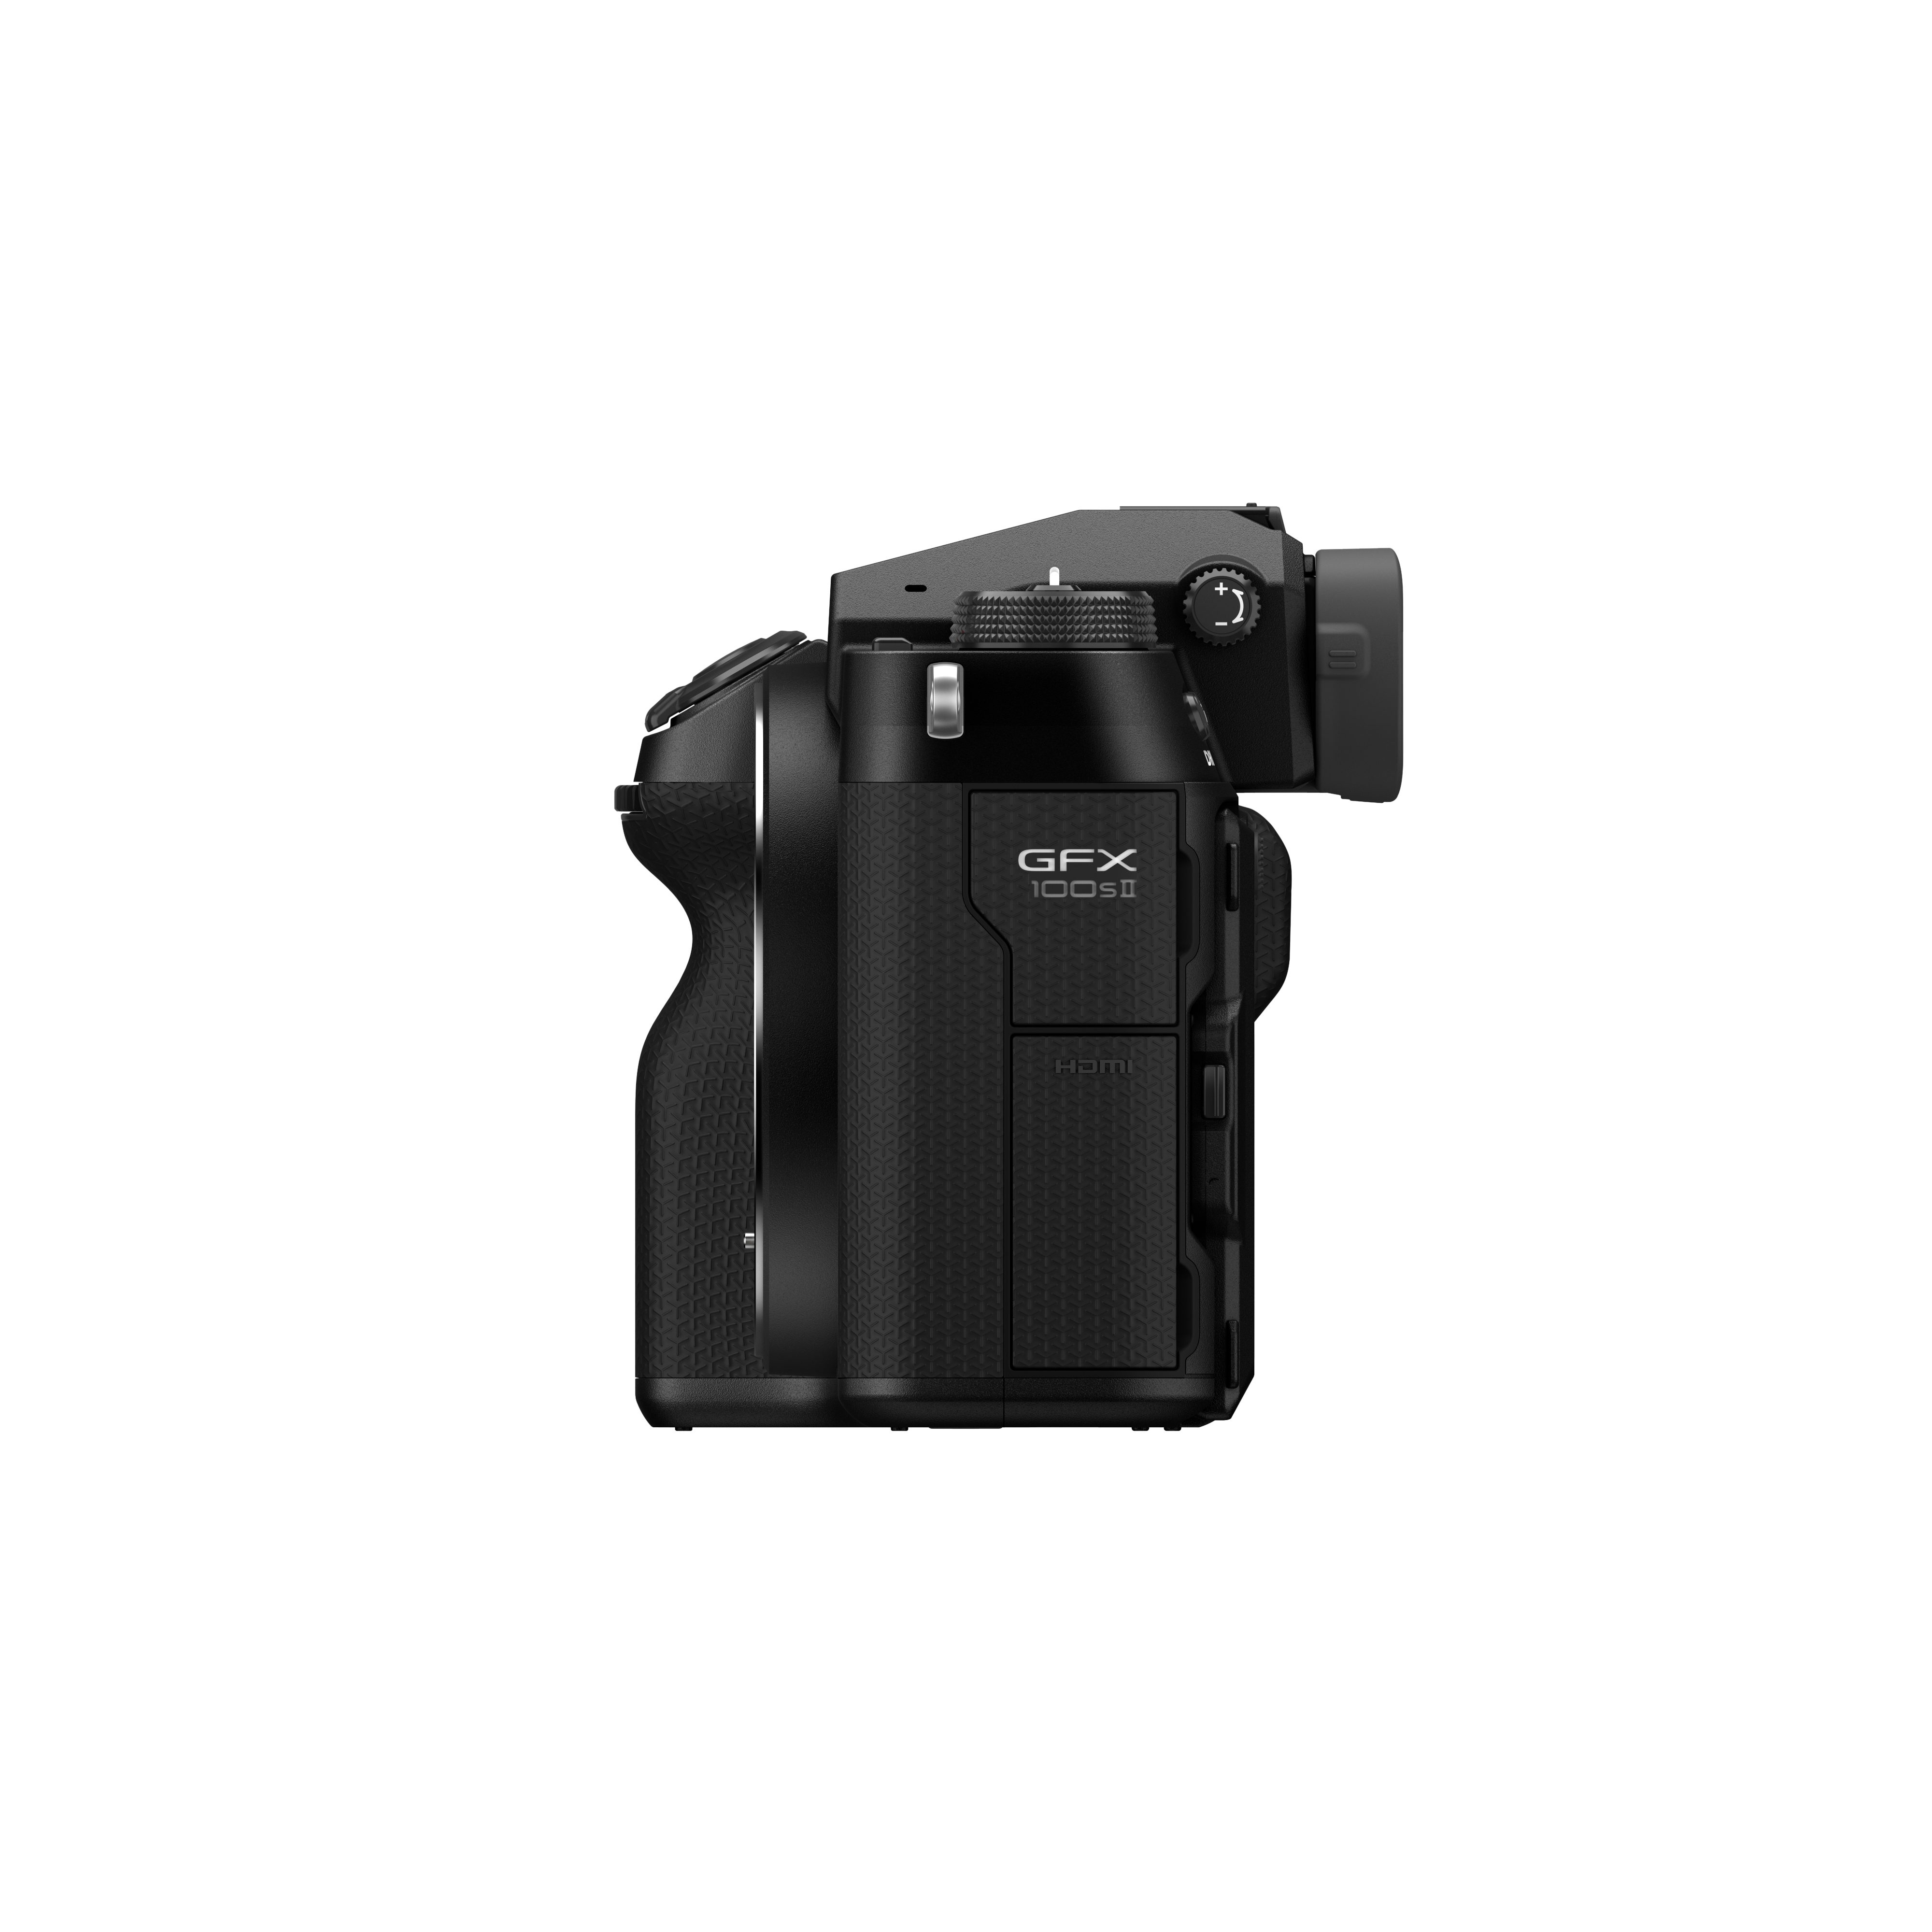 กล้อง GFX100SII กล้องดิจิตอลมีเดียมฟอร์แมตรุ่นล่าสุดจาก GFX System ผสานเทคโนโลยีสุดล้ำนำสมัยอย่างเซ็นเซอร์ 102 MP